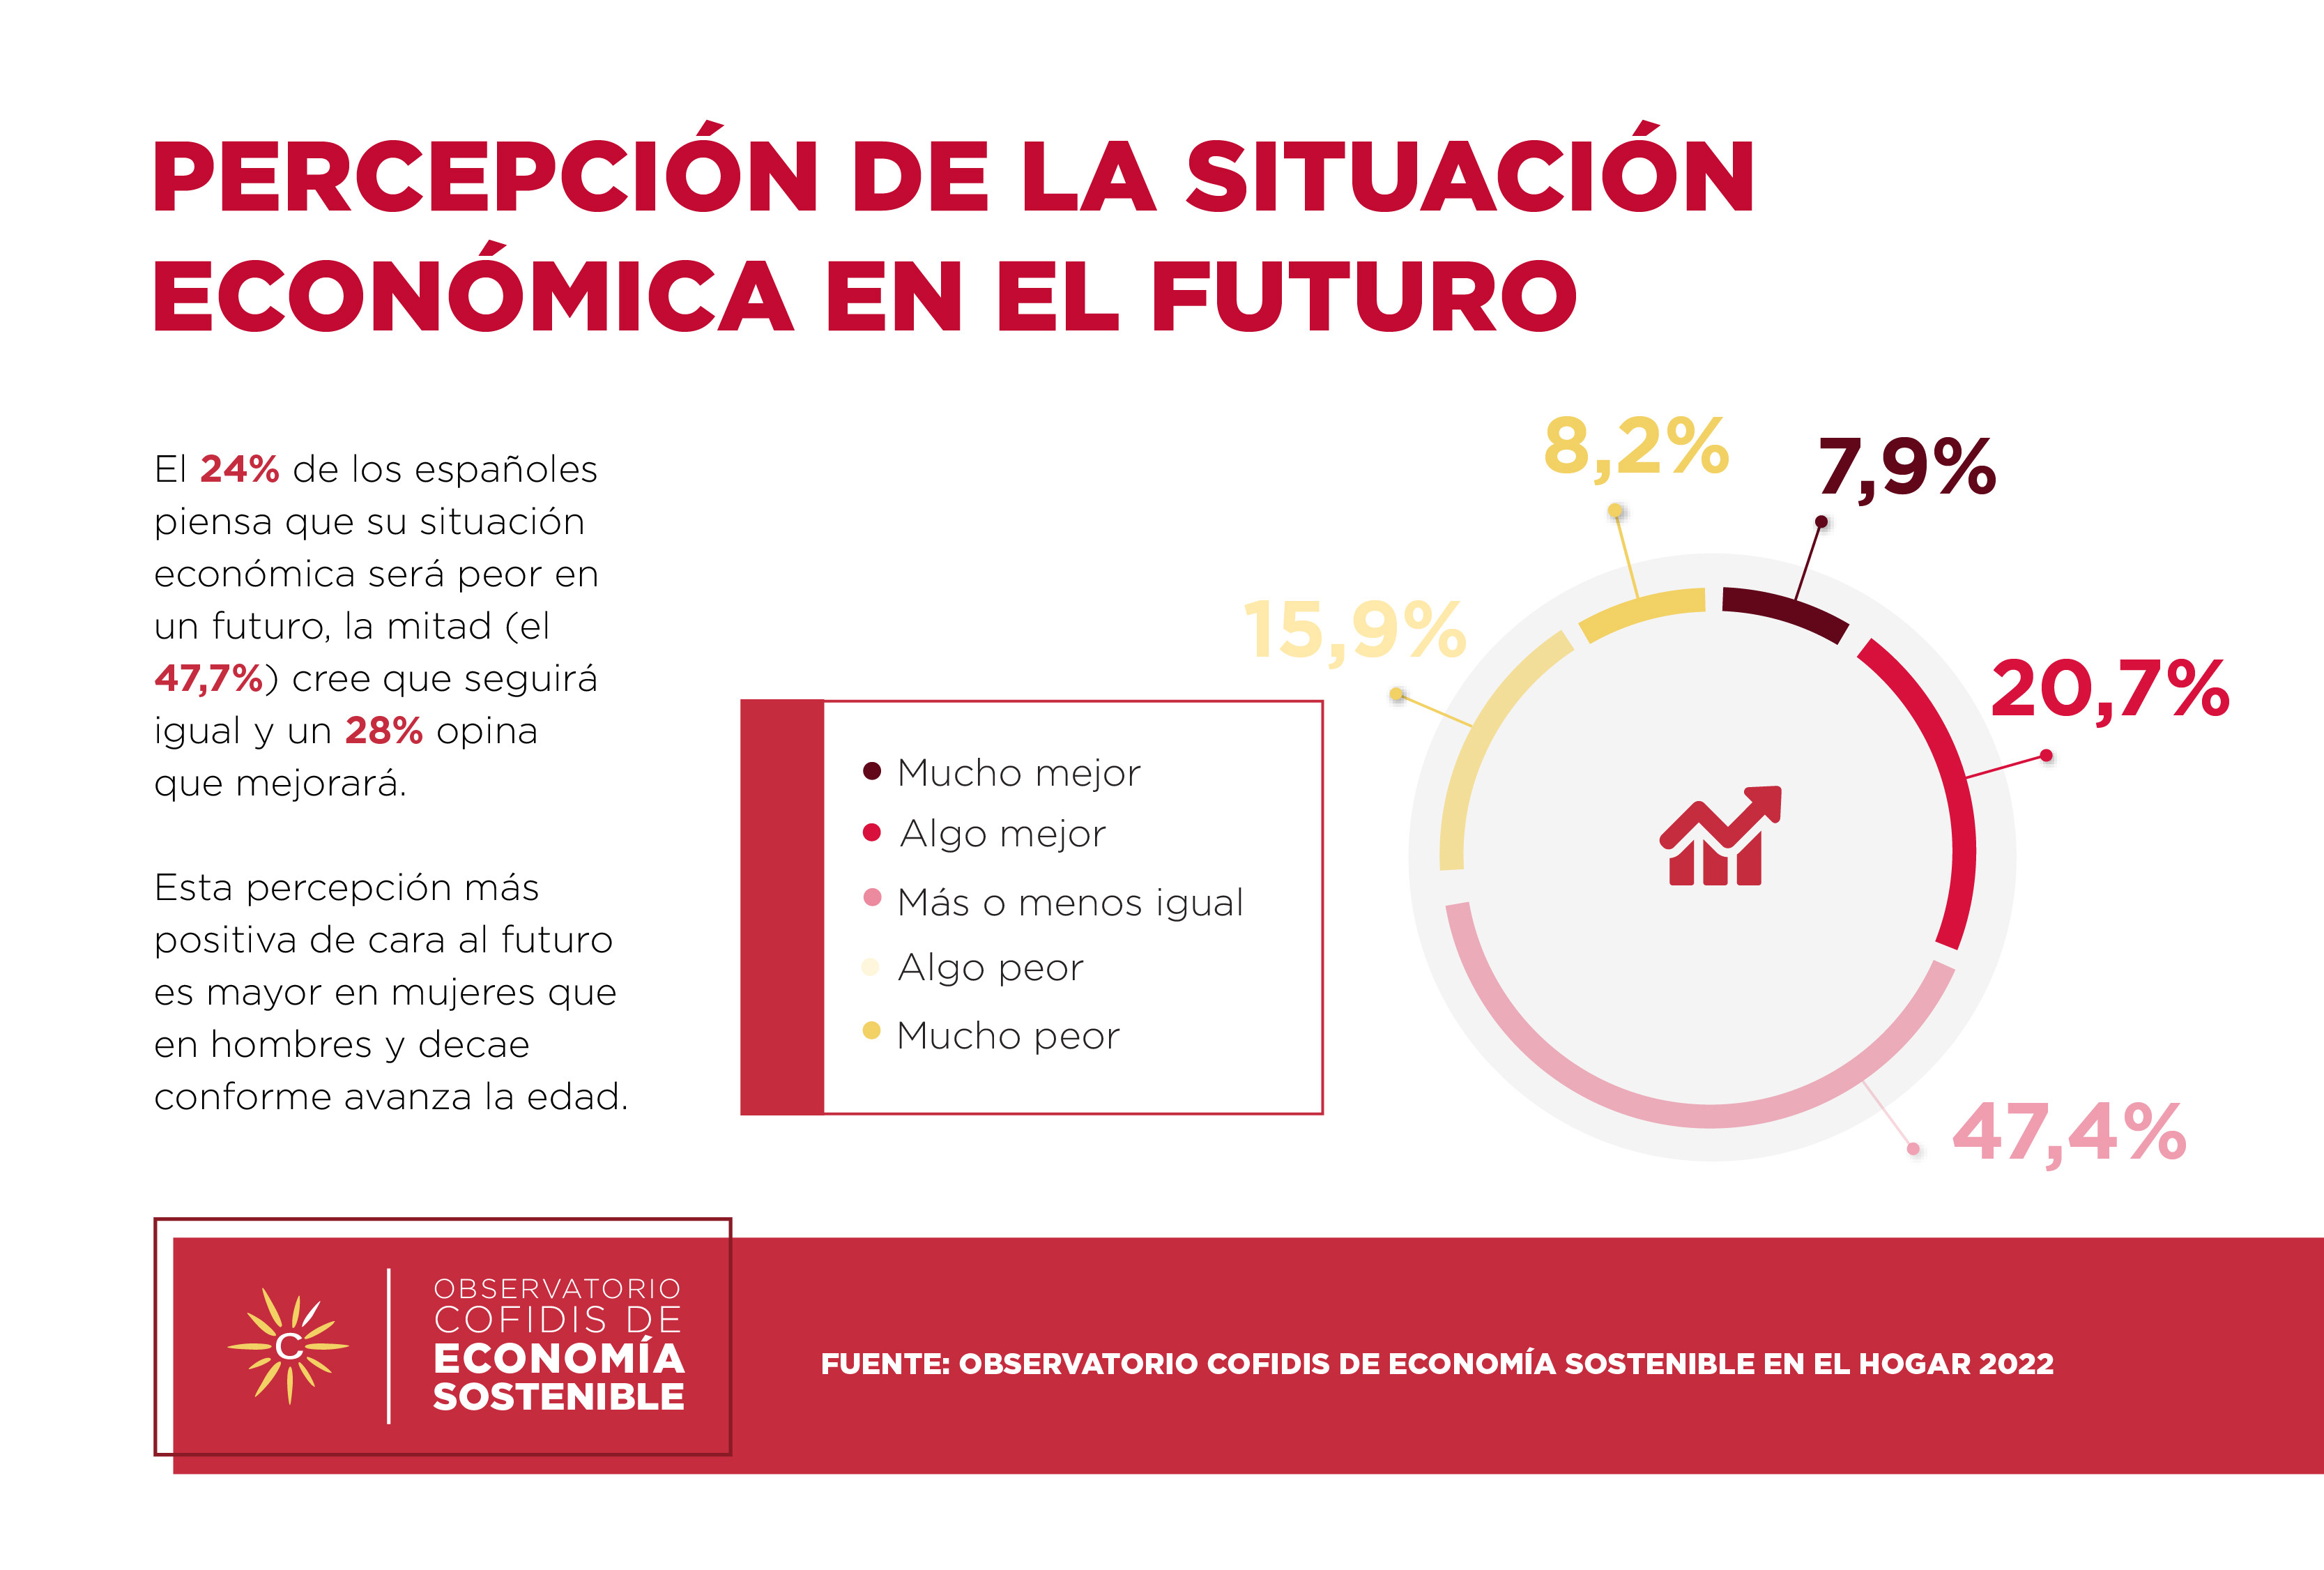  Uno de cada cuatro españoles cree que su situación económica empeorará en el futuro 